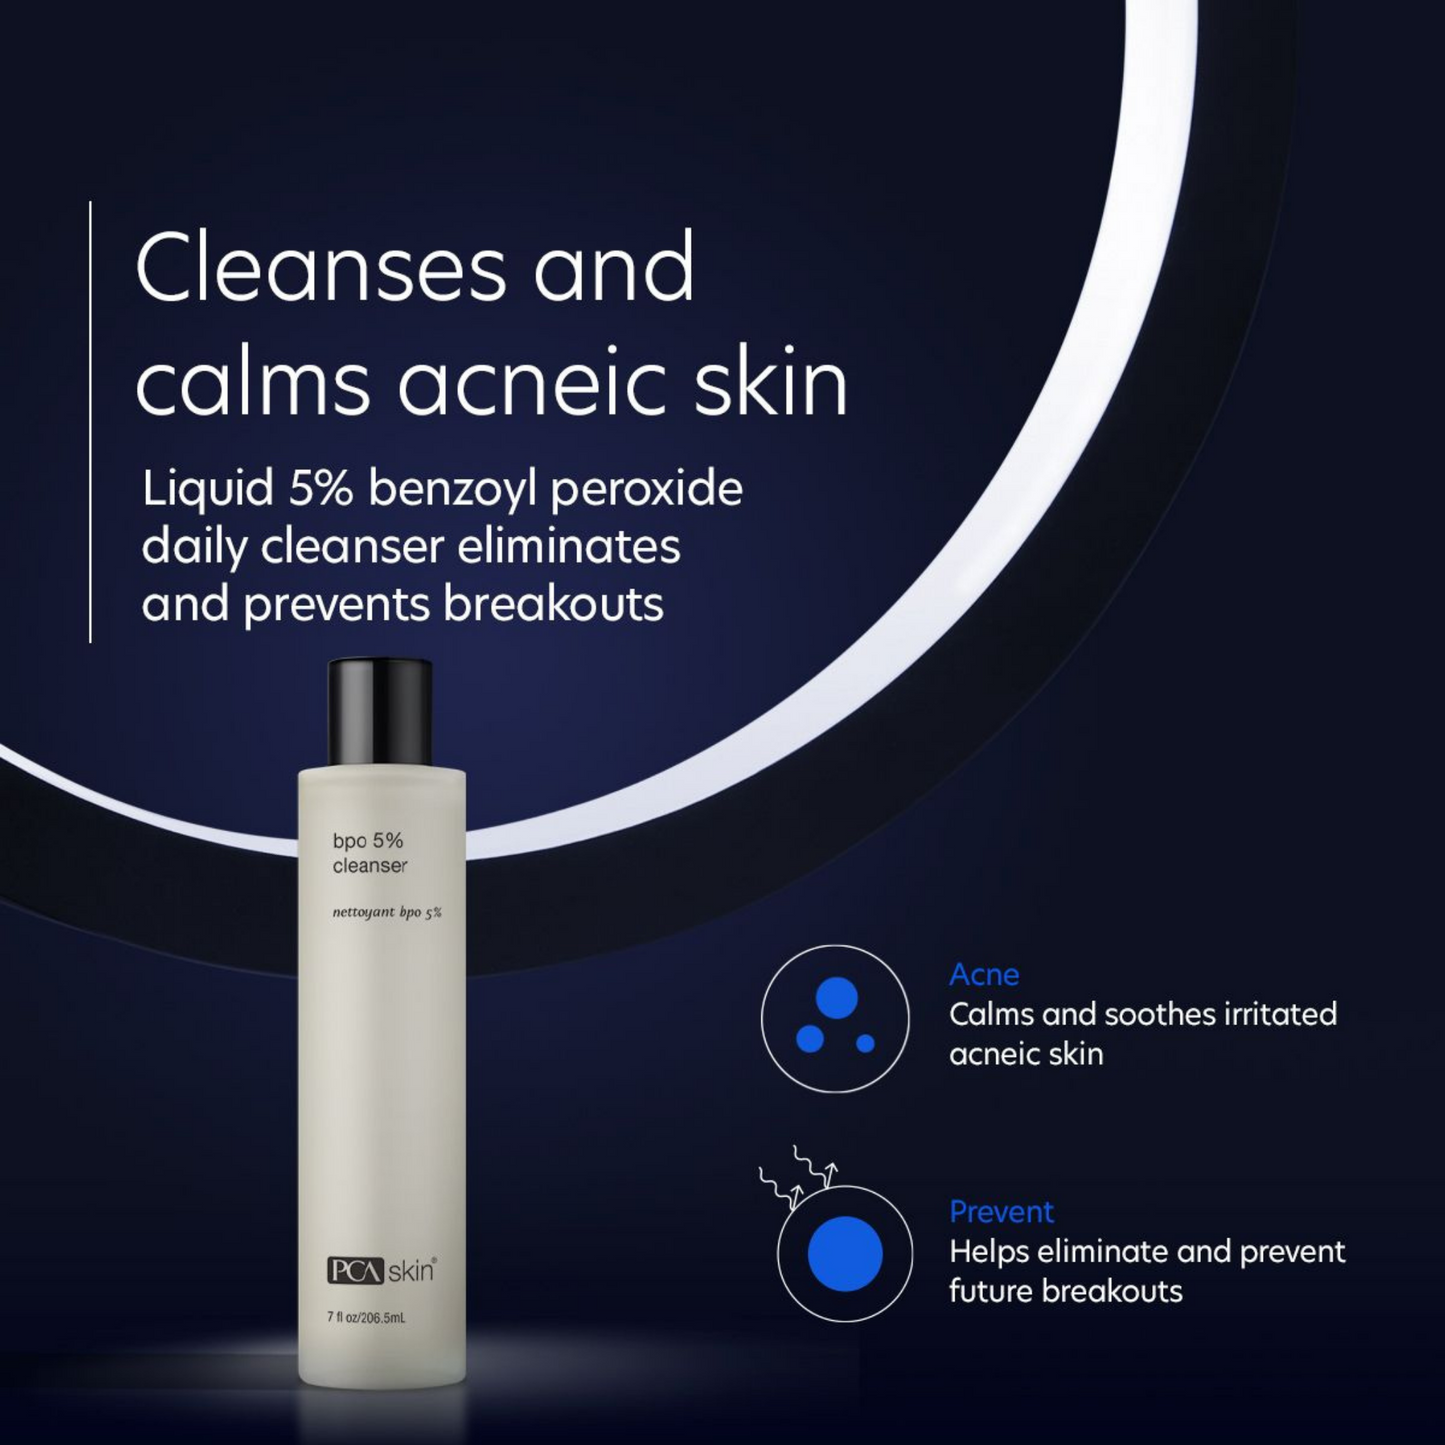 BPO 5% Cleanser | PCA Skin